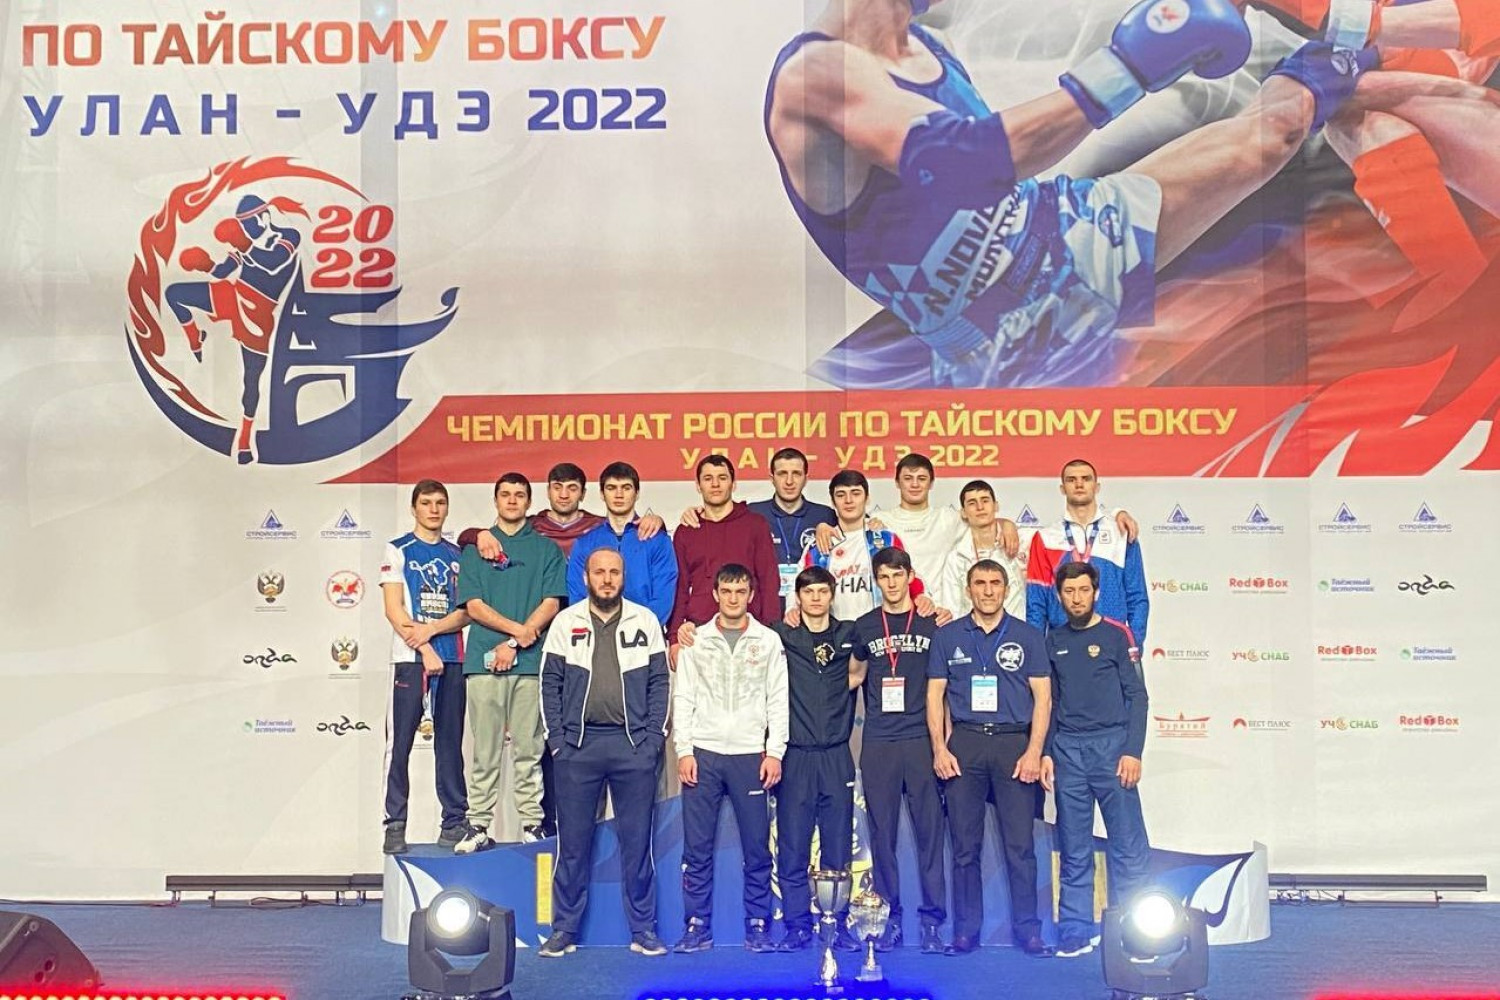 Кузбасские тайбоксеры вновь стали чемпионами России при поддержке АО Стройсервис. Стройсервис